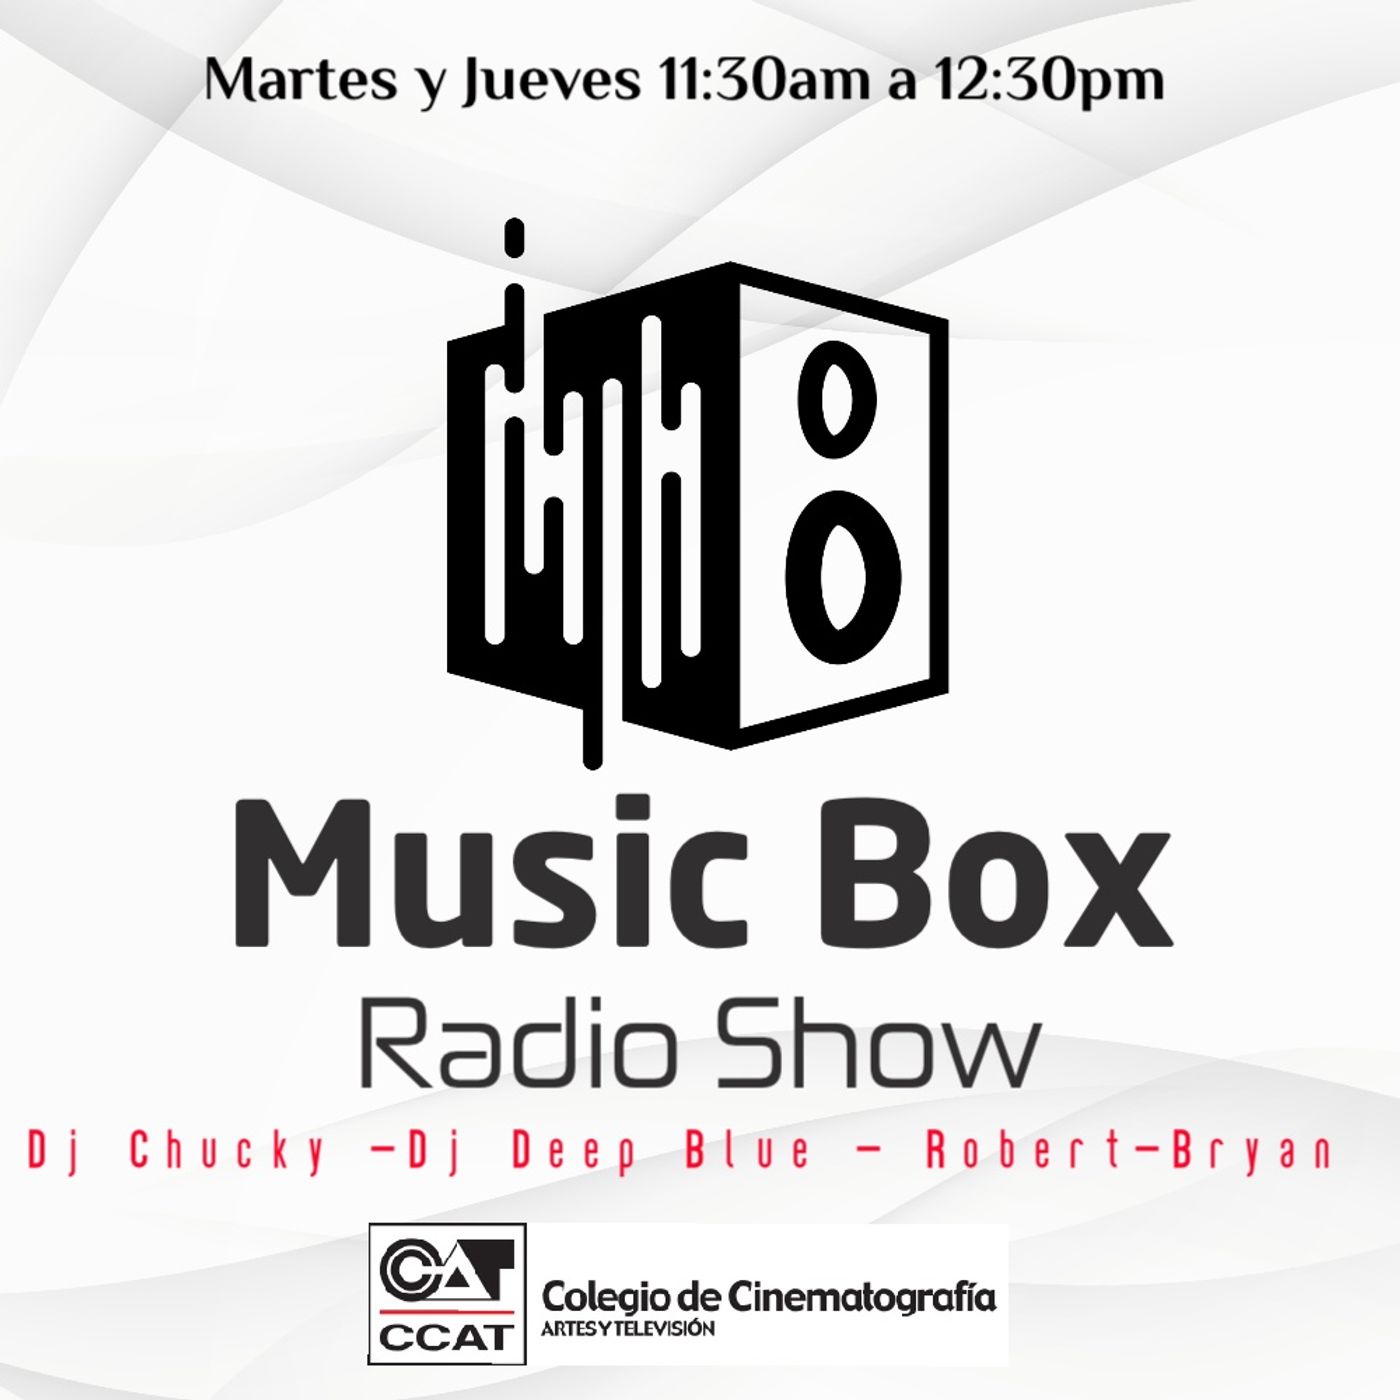 Music Box Radio Show CCAT CAGUAS